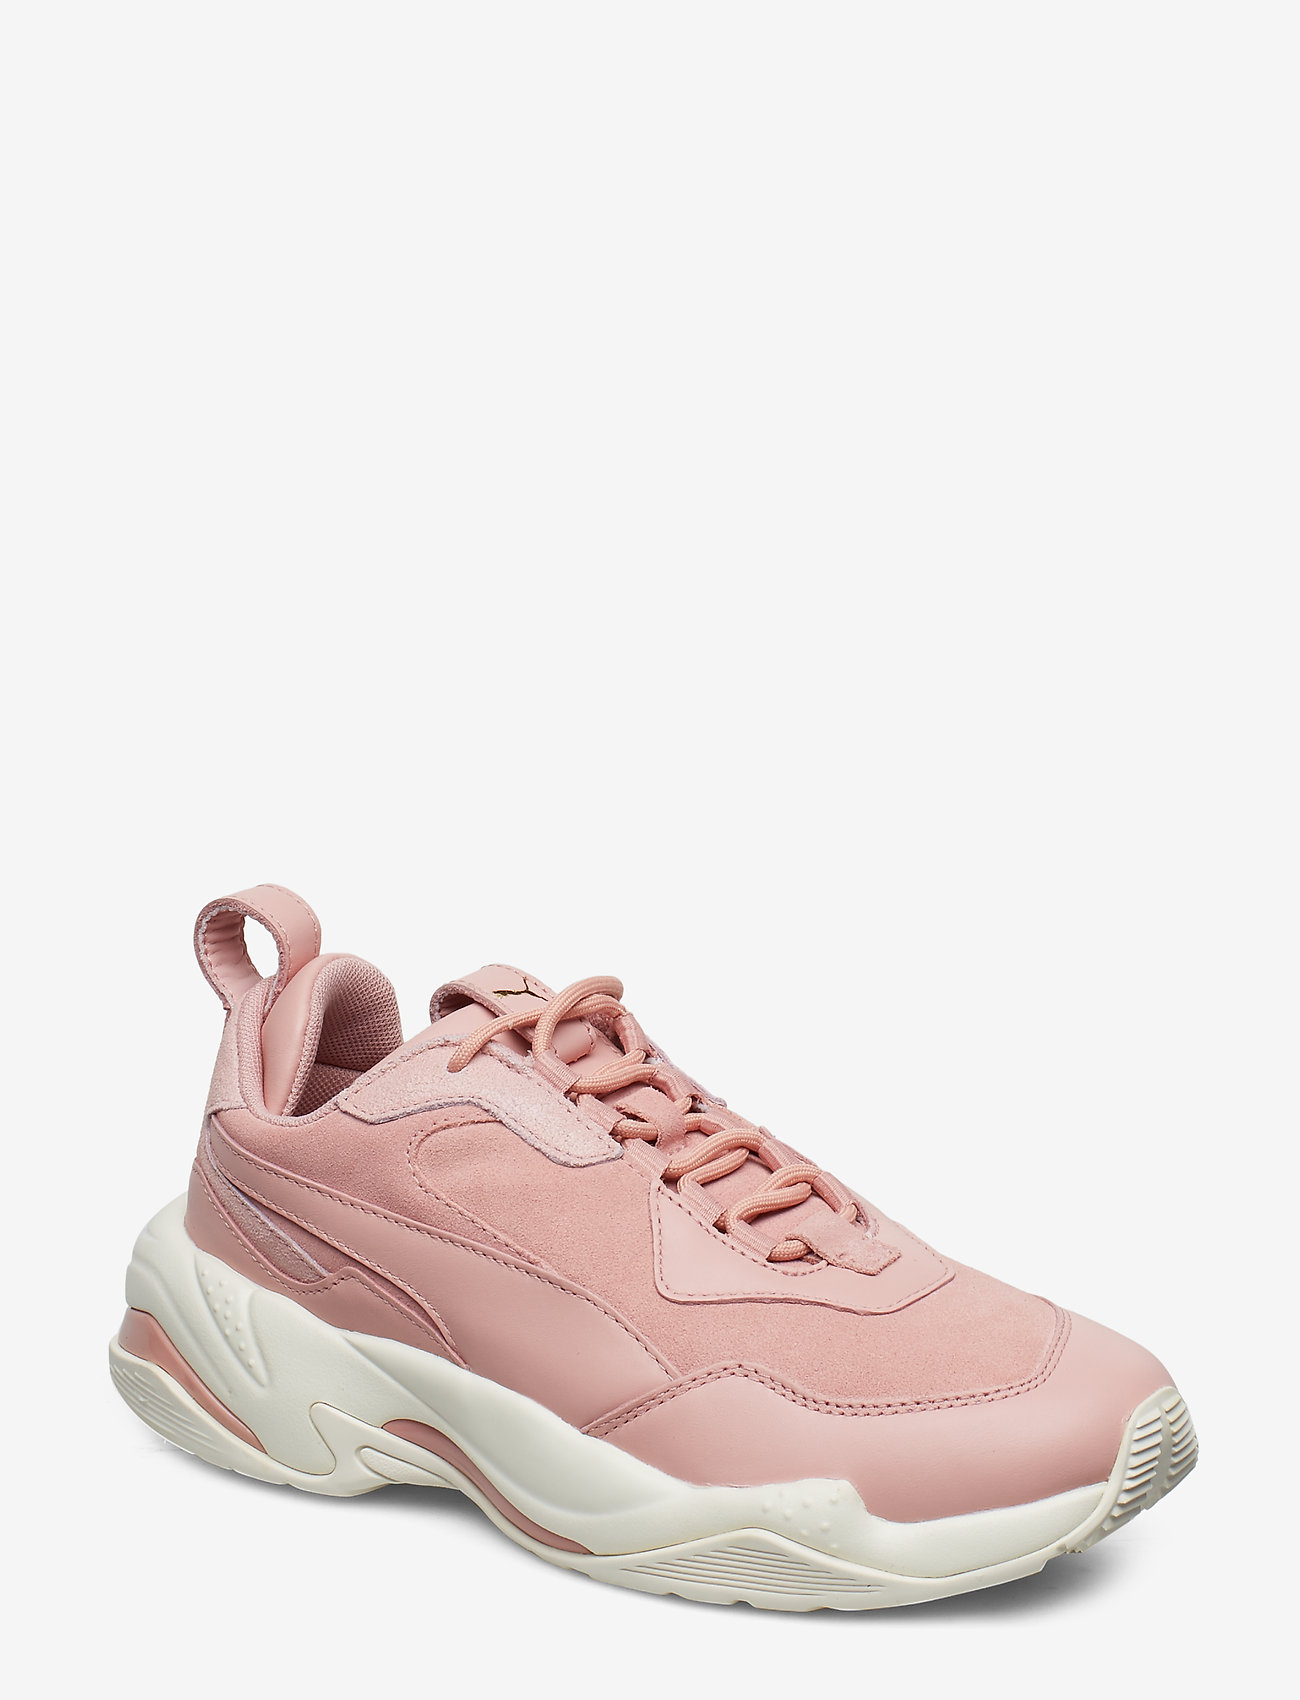 rose puma shoes